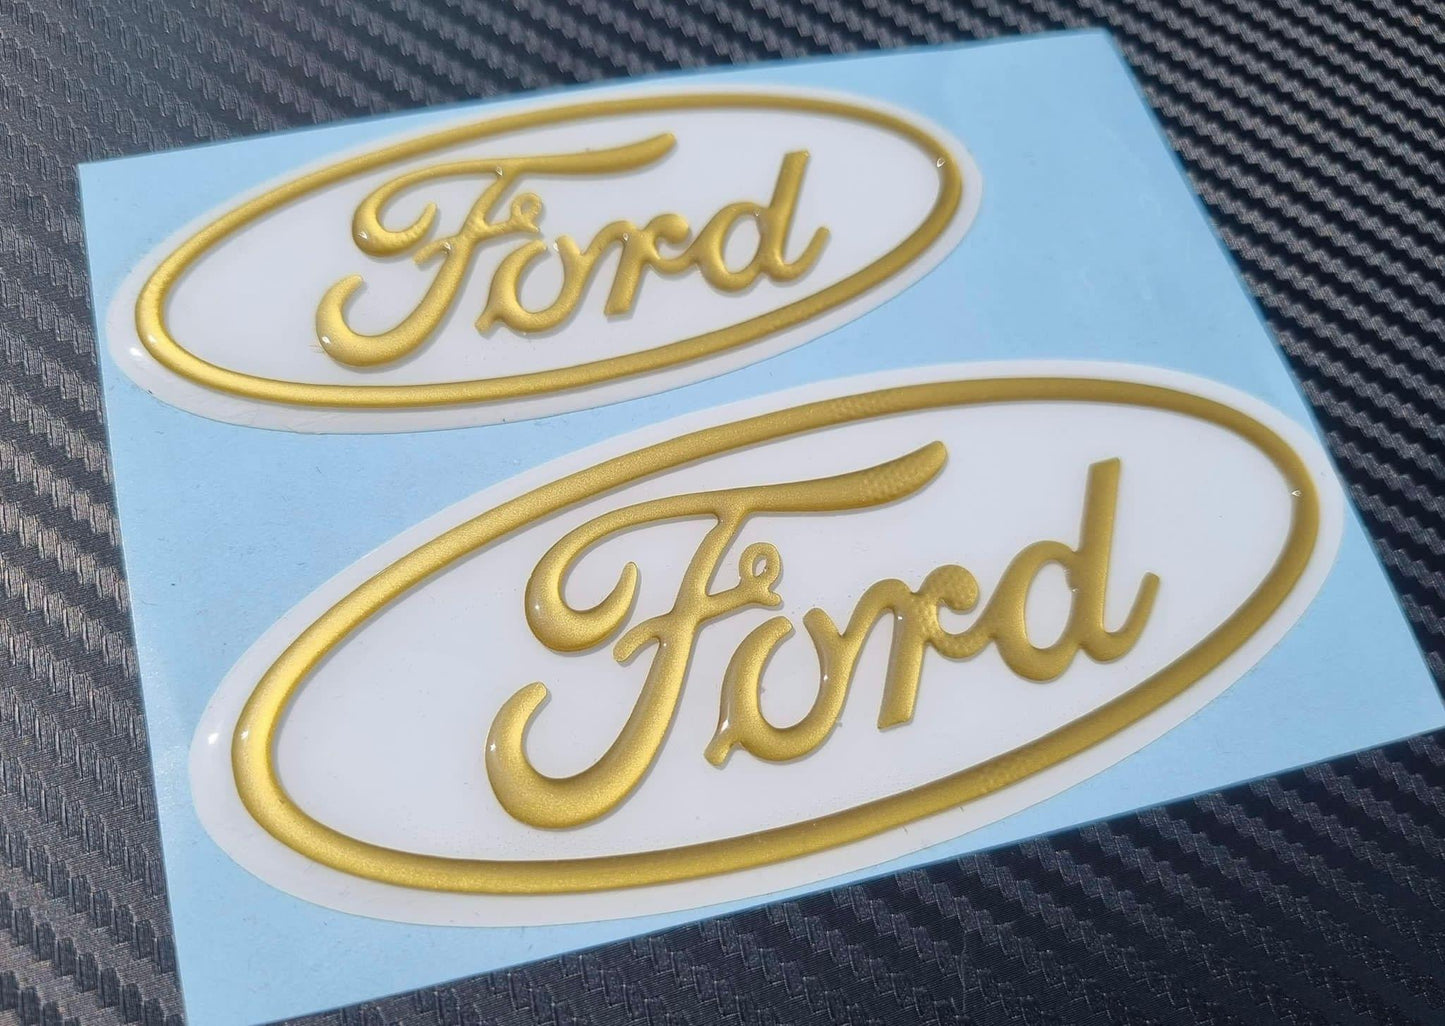 3D Ford Gel Badges (front & back ONLY)